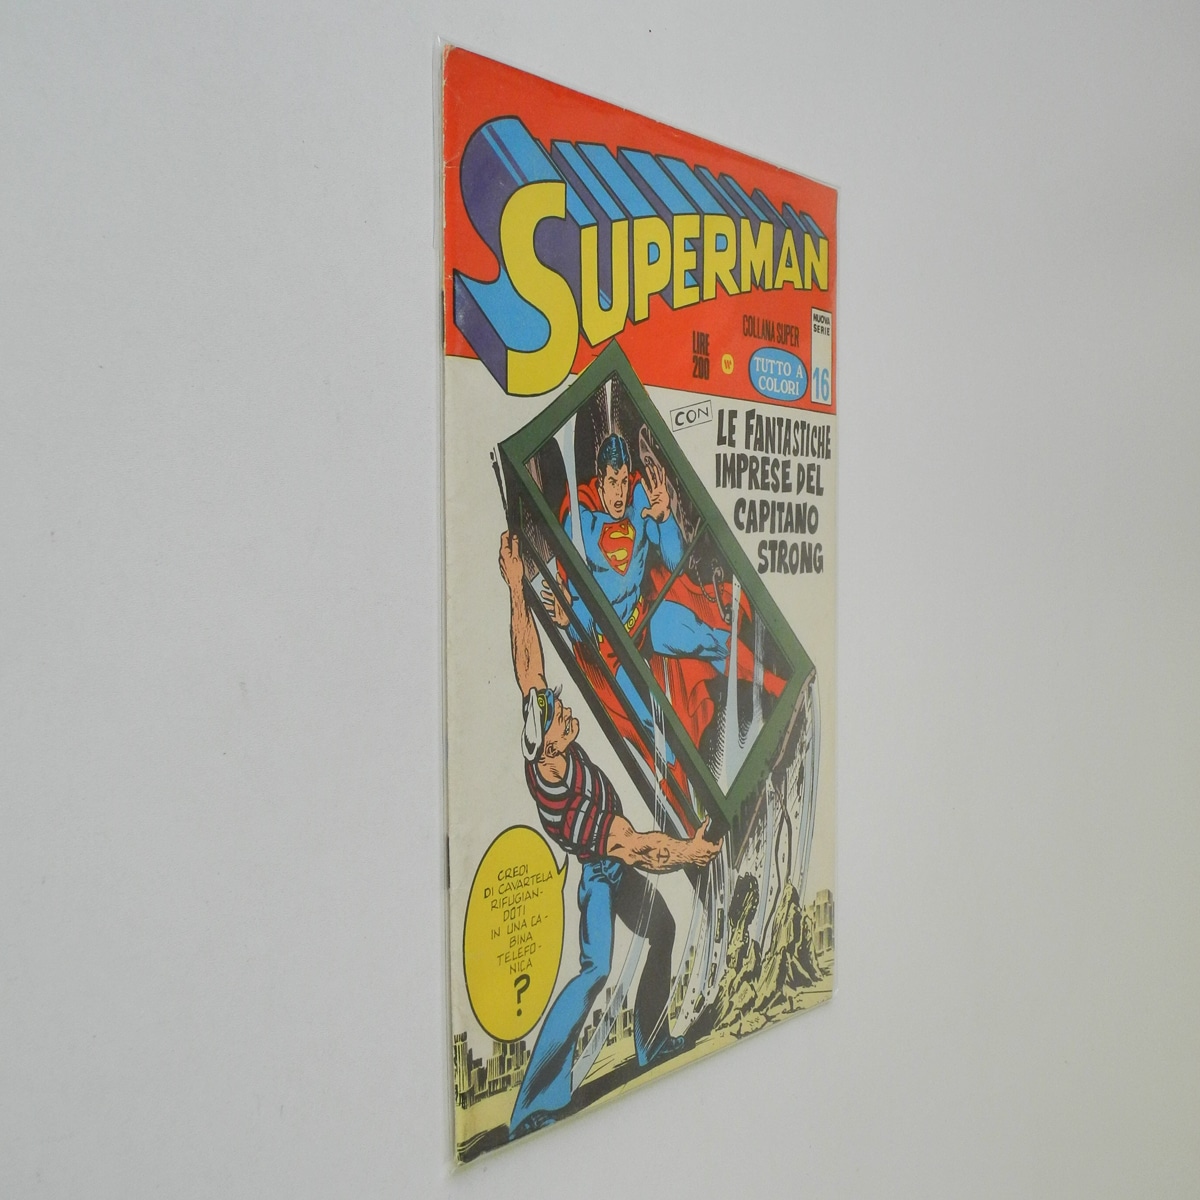 Superman Nuova Serie n. 16 Le fantastiche imprese del Capitano Strong